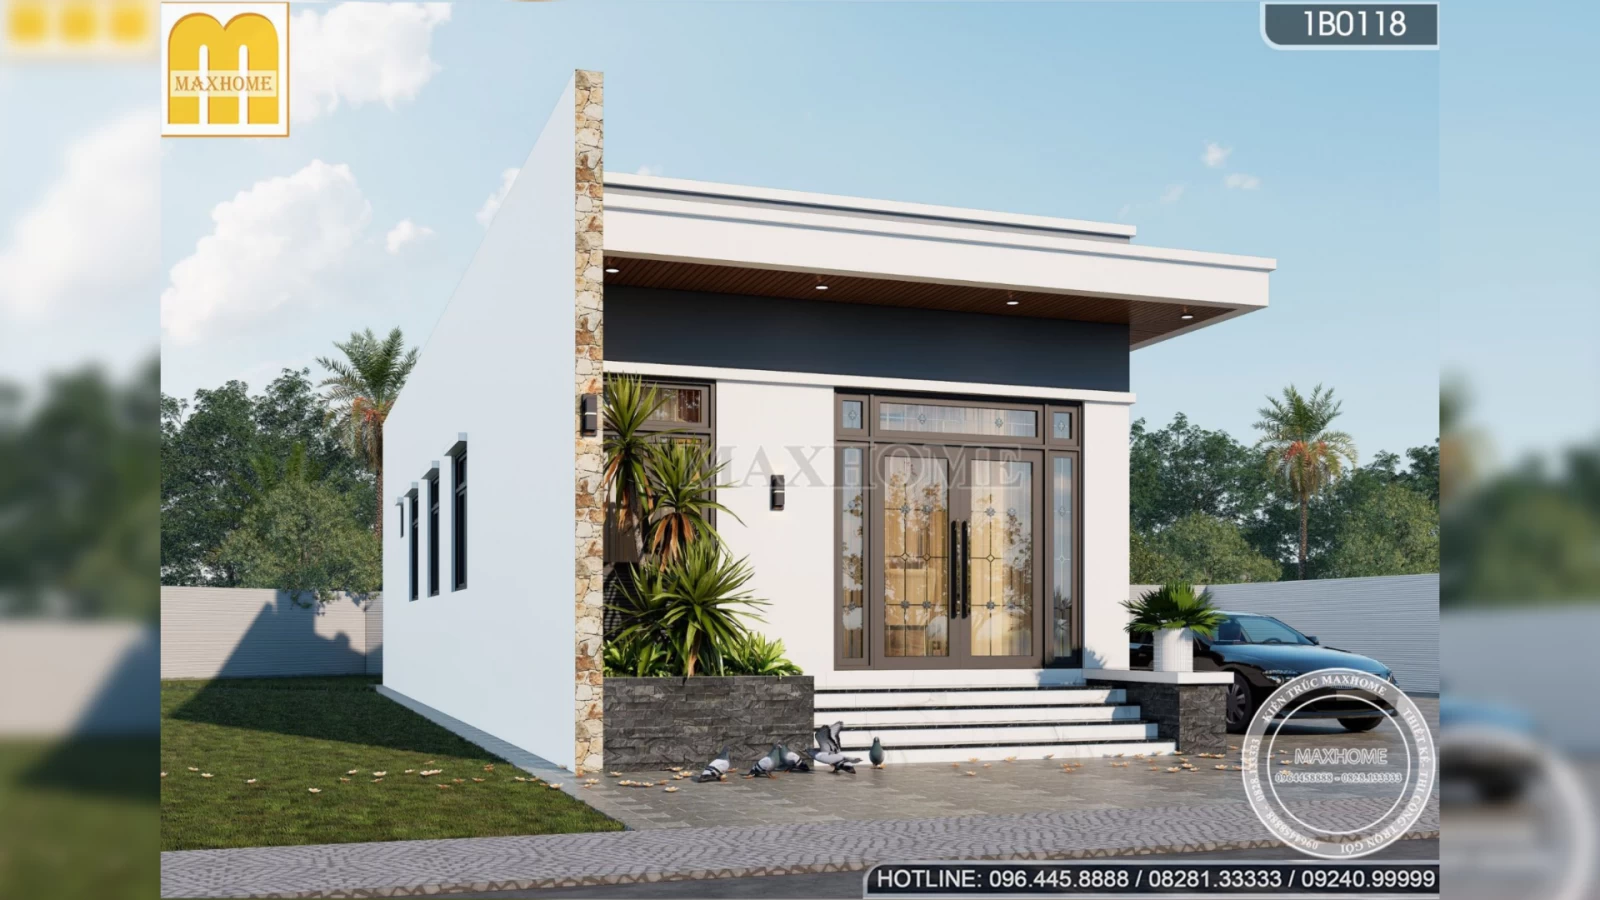 Thiết kế nhà mái bằng 1 tầng đẹp ấn tượng, chi phí rẻ tại Hà Nội | MH02821